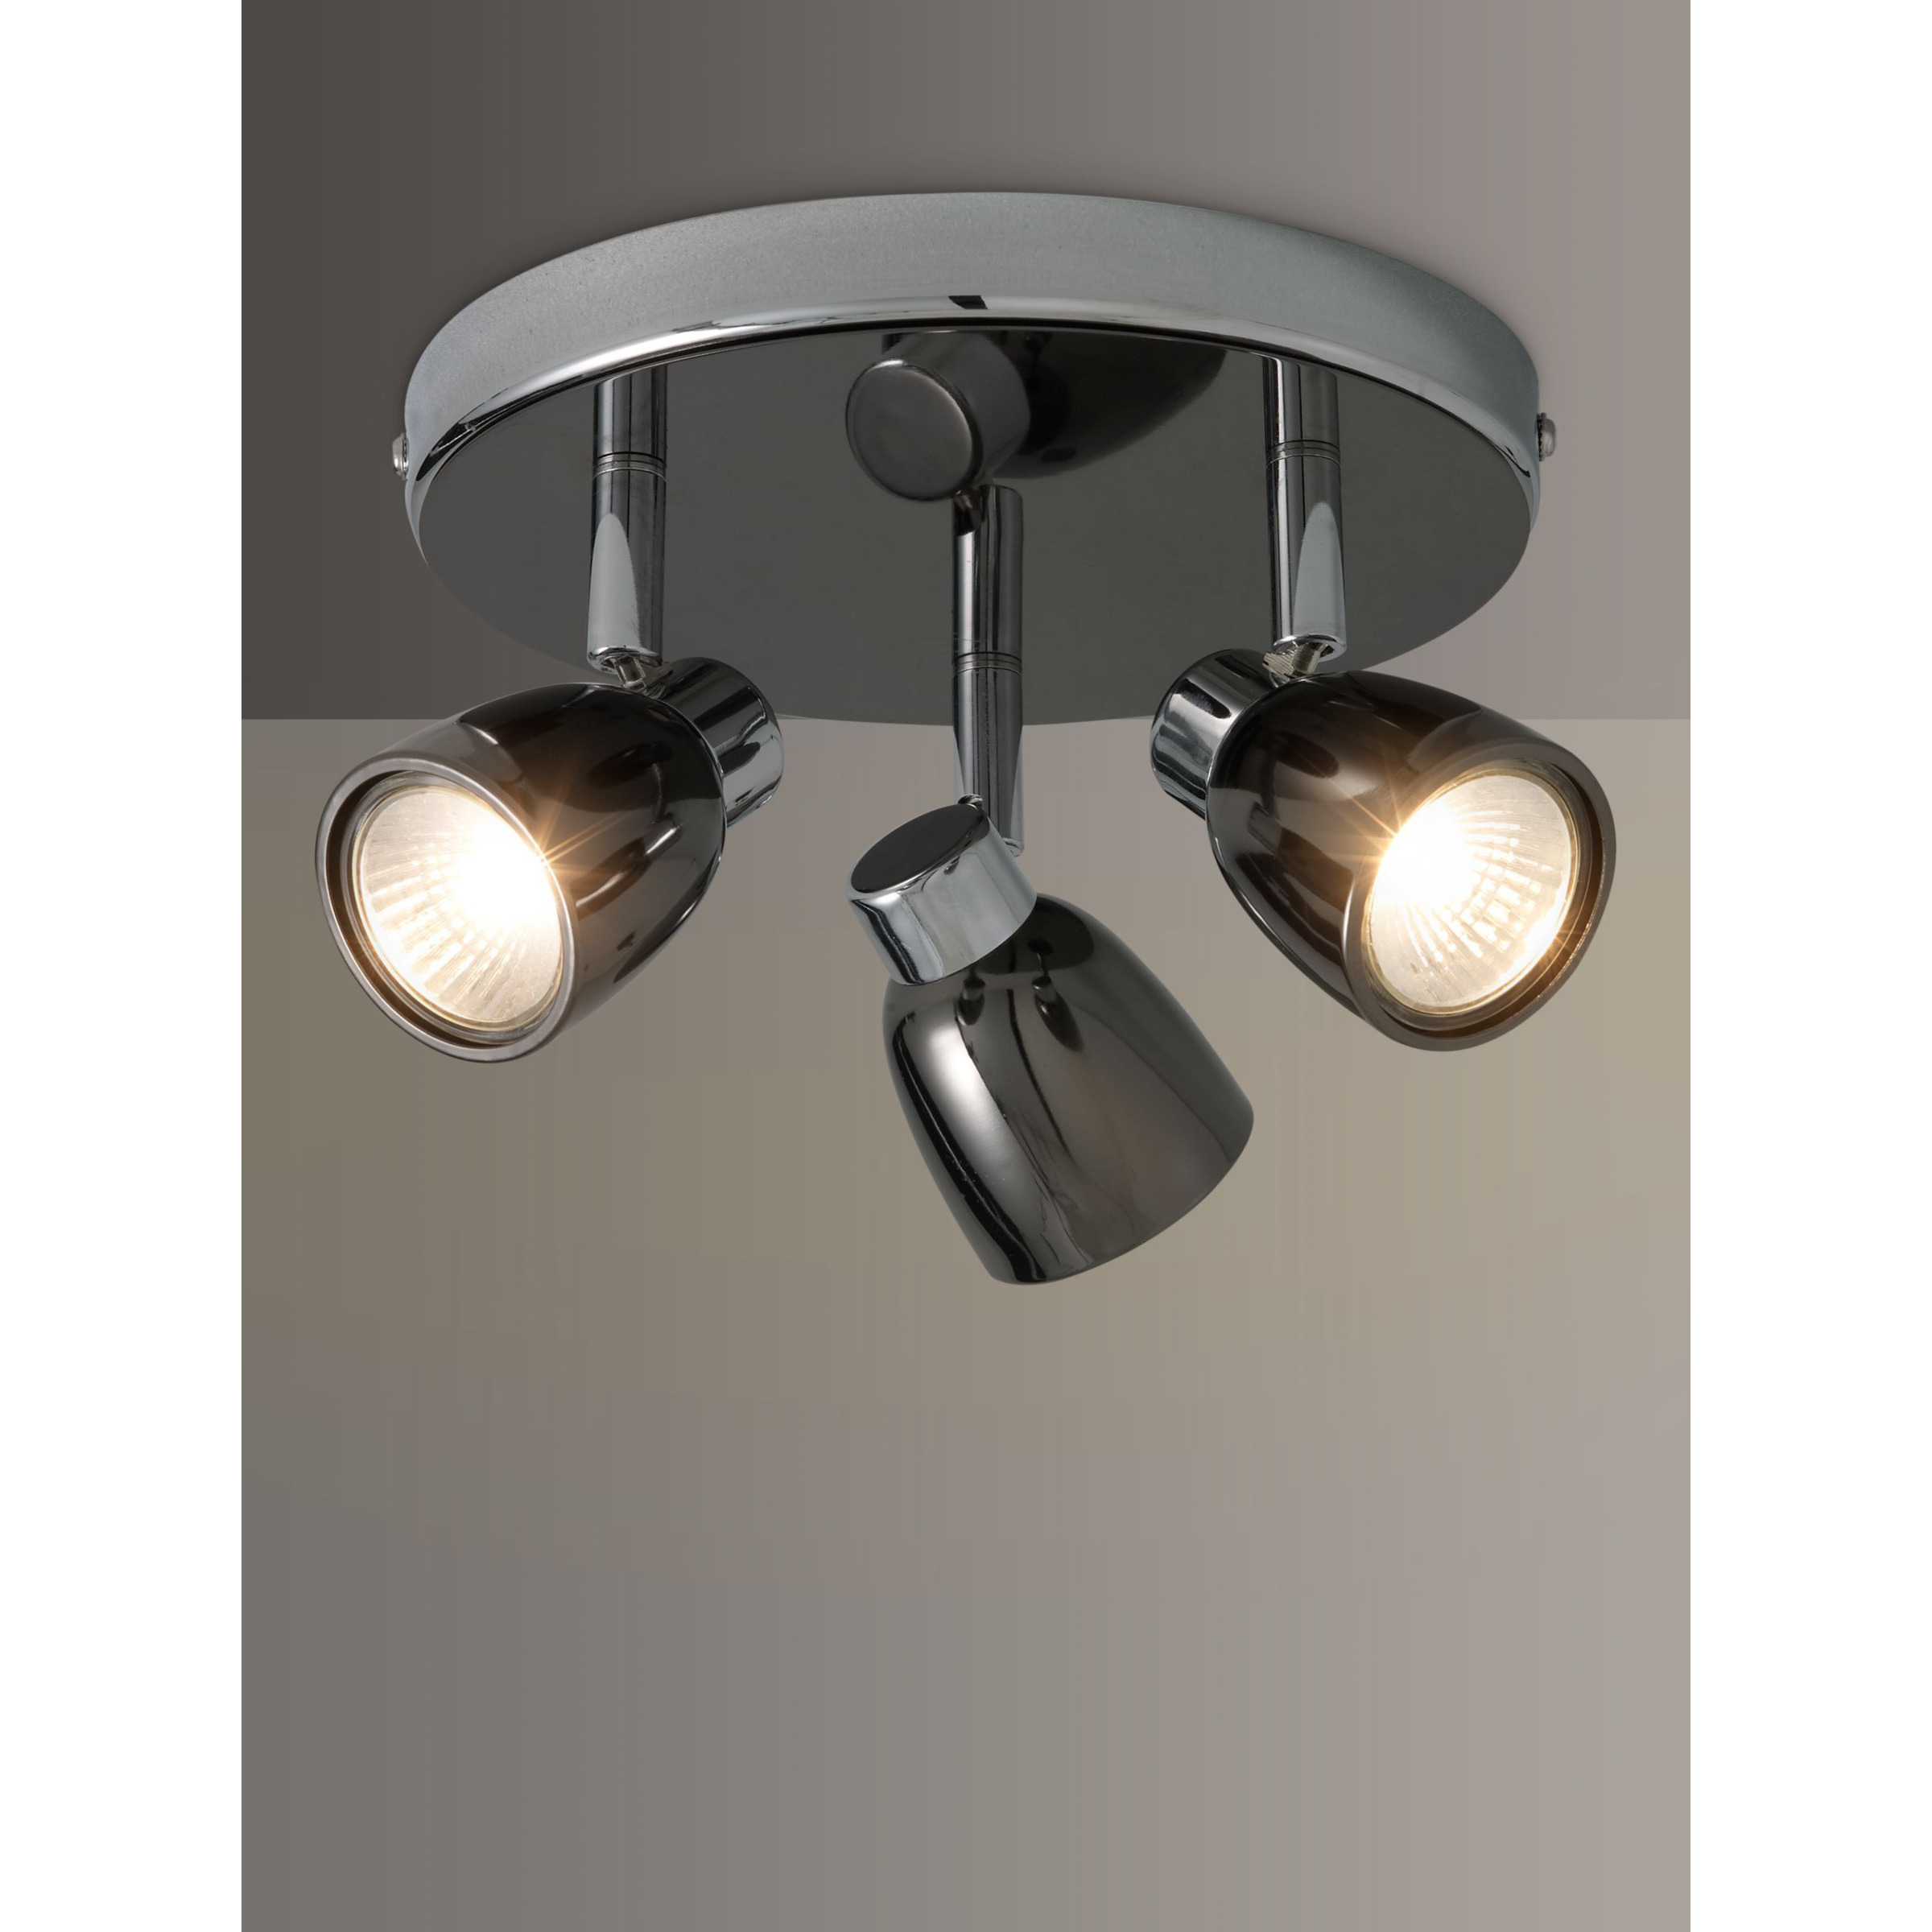 John Lewis Fenix GU10 LED 3 Spotlight Ceiling Plate, Black Pearl Nickel - image 1